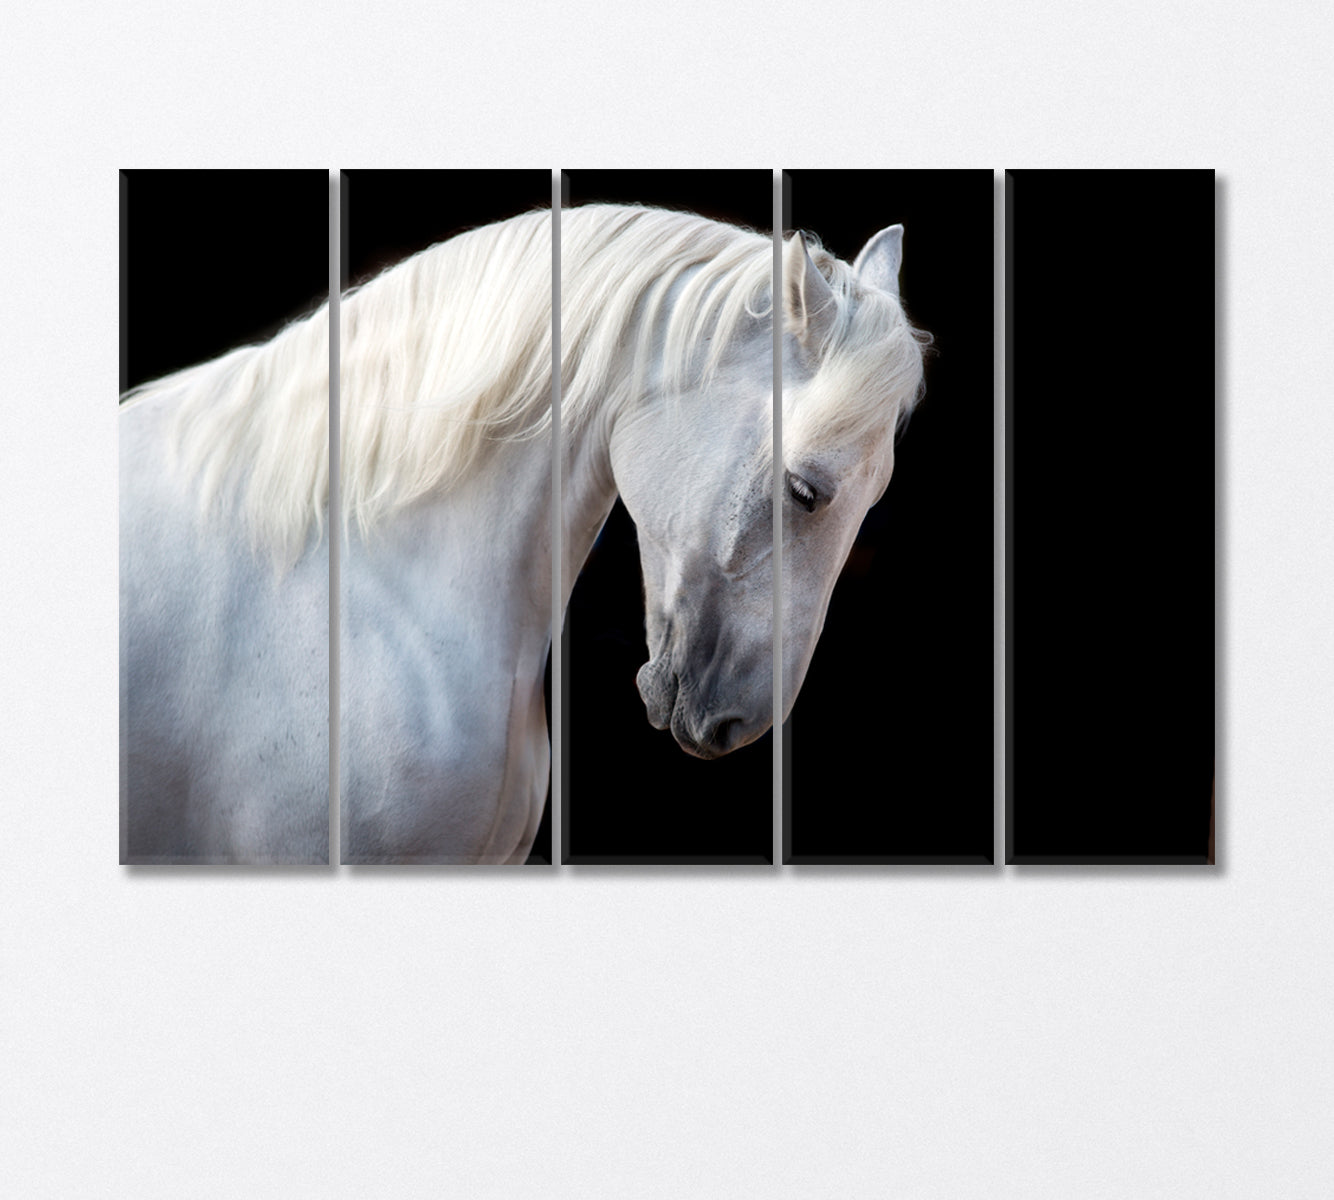 White Horse Portrait Canvas Print-Canvas Print-CetArt-5 Panels-36x24 inches-CetArt